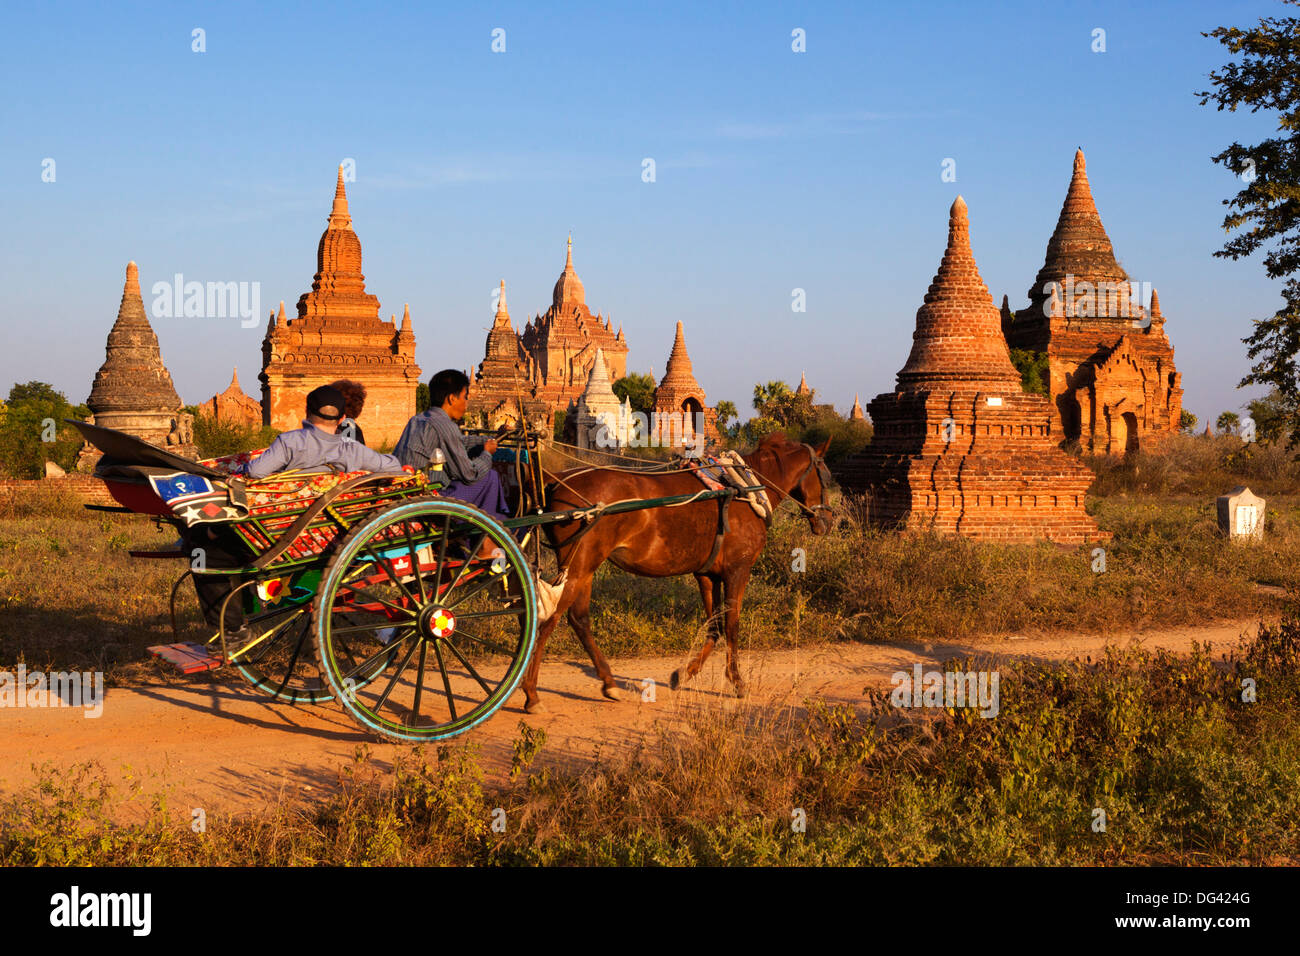 Cavallo di legno carrello tenendo i turisti intorno a Bagan templi, Bagan (pagano), centro del Myanmar, Myanmar (Birmania), Asia Foto Stock